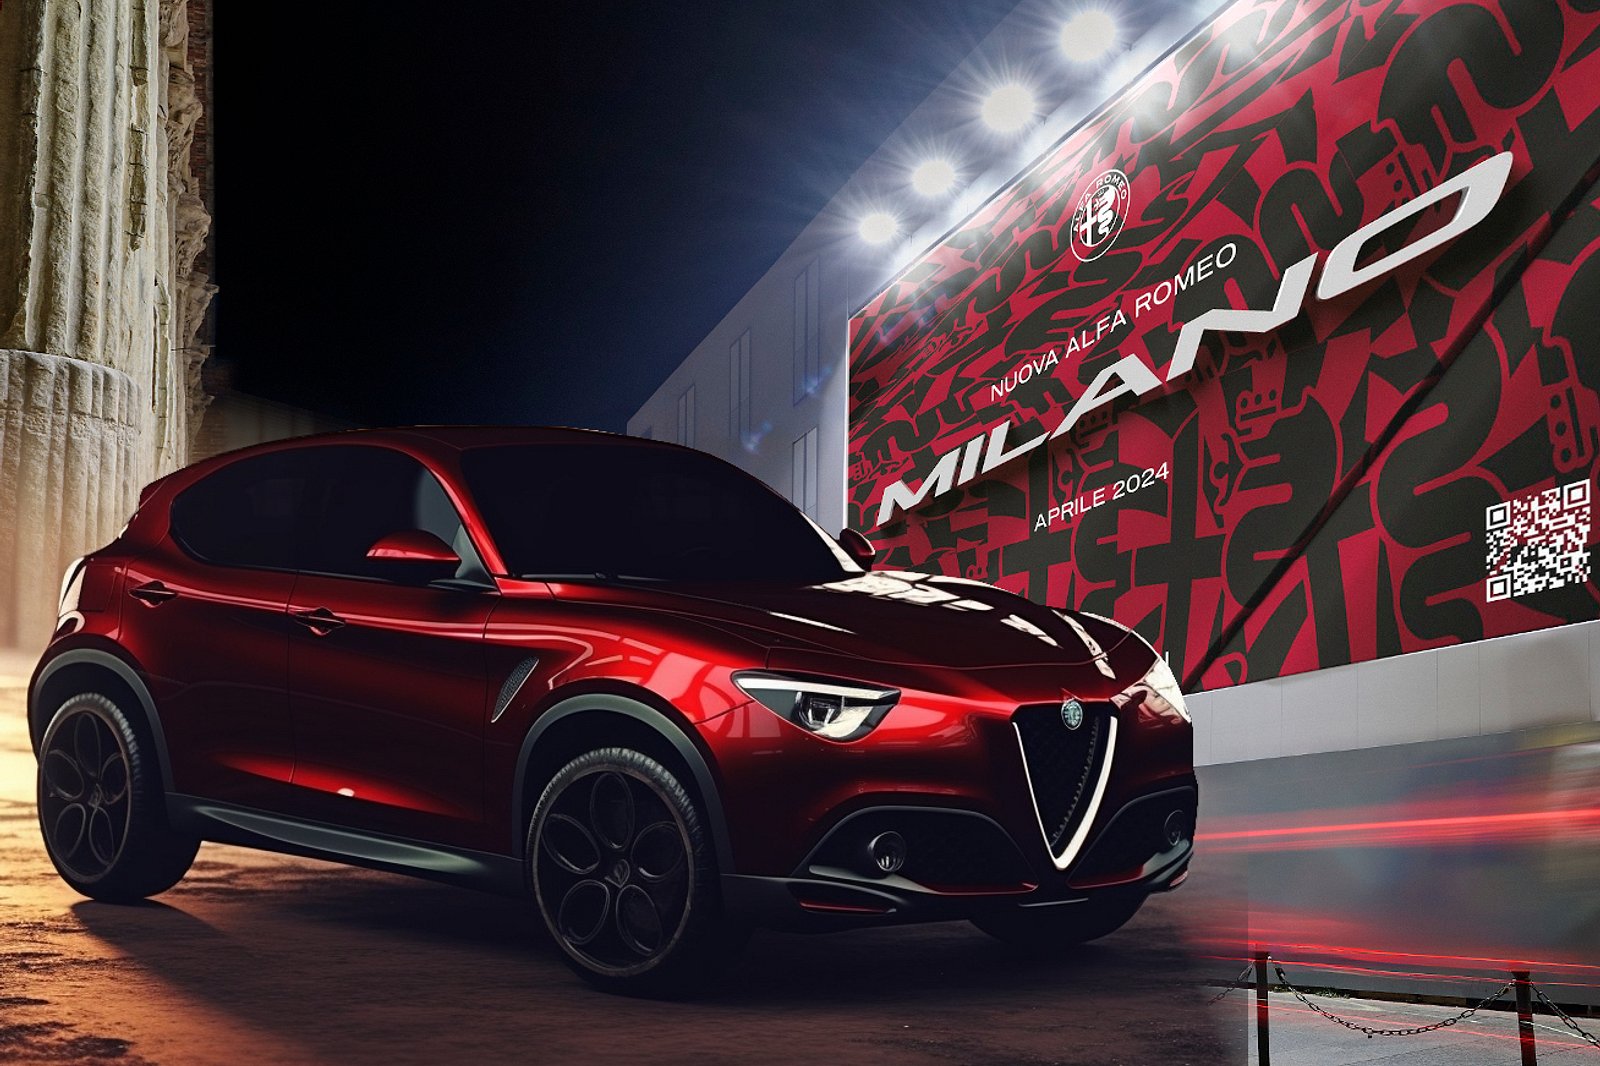 Η νέα Alfa Romeo Milano έτοιμη για την αποκάλυψη